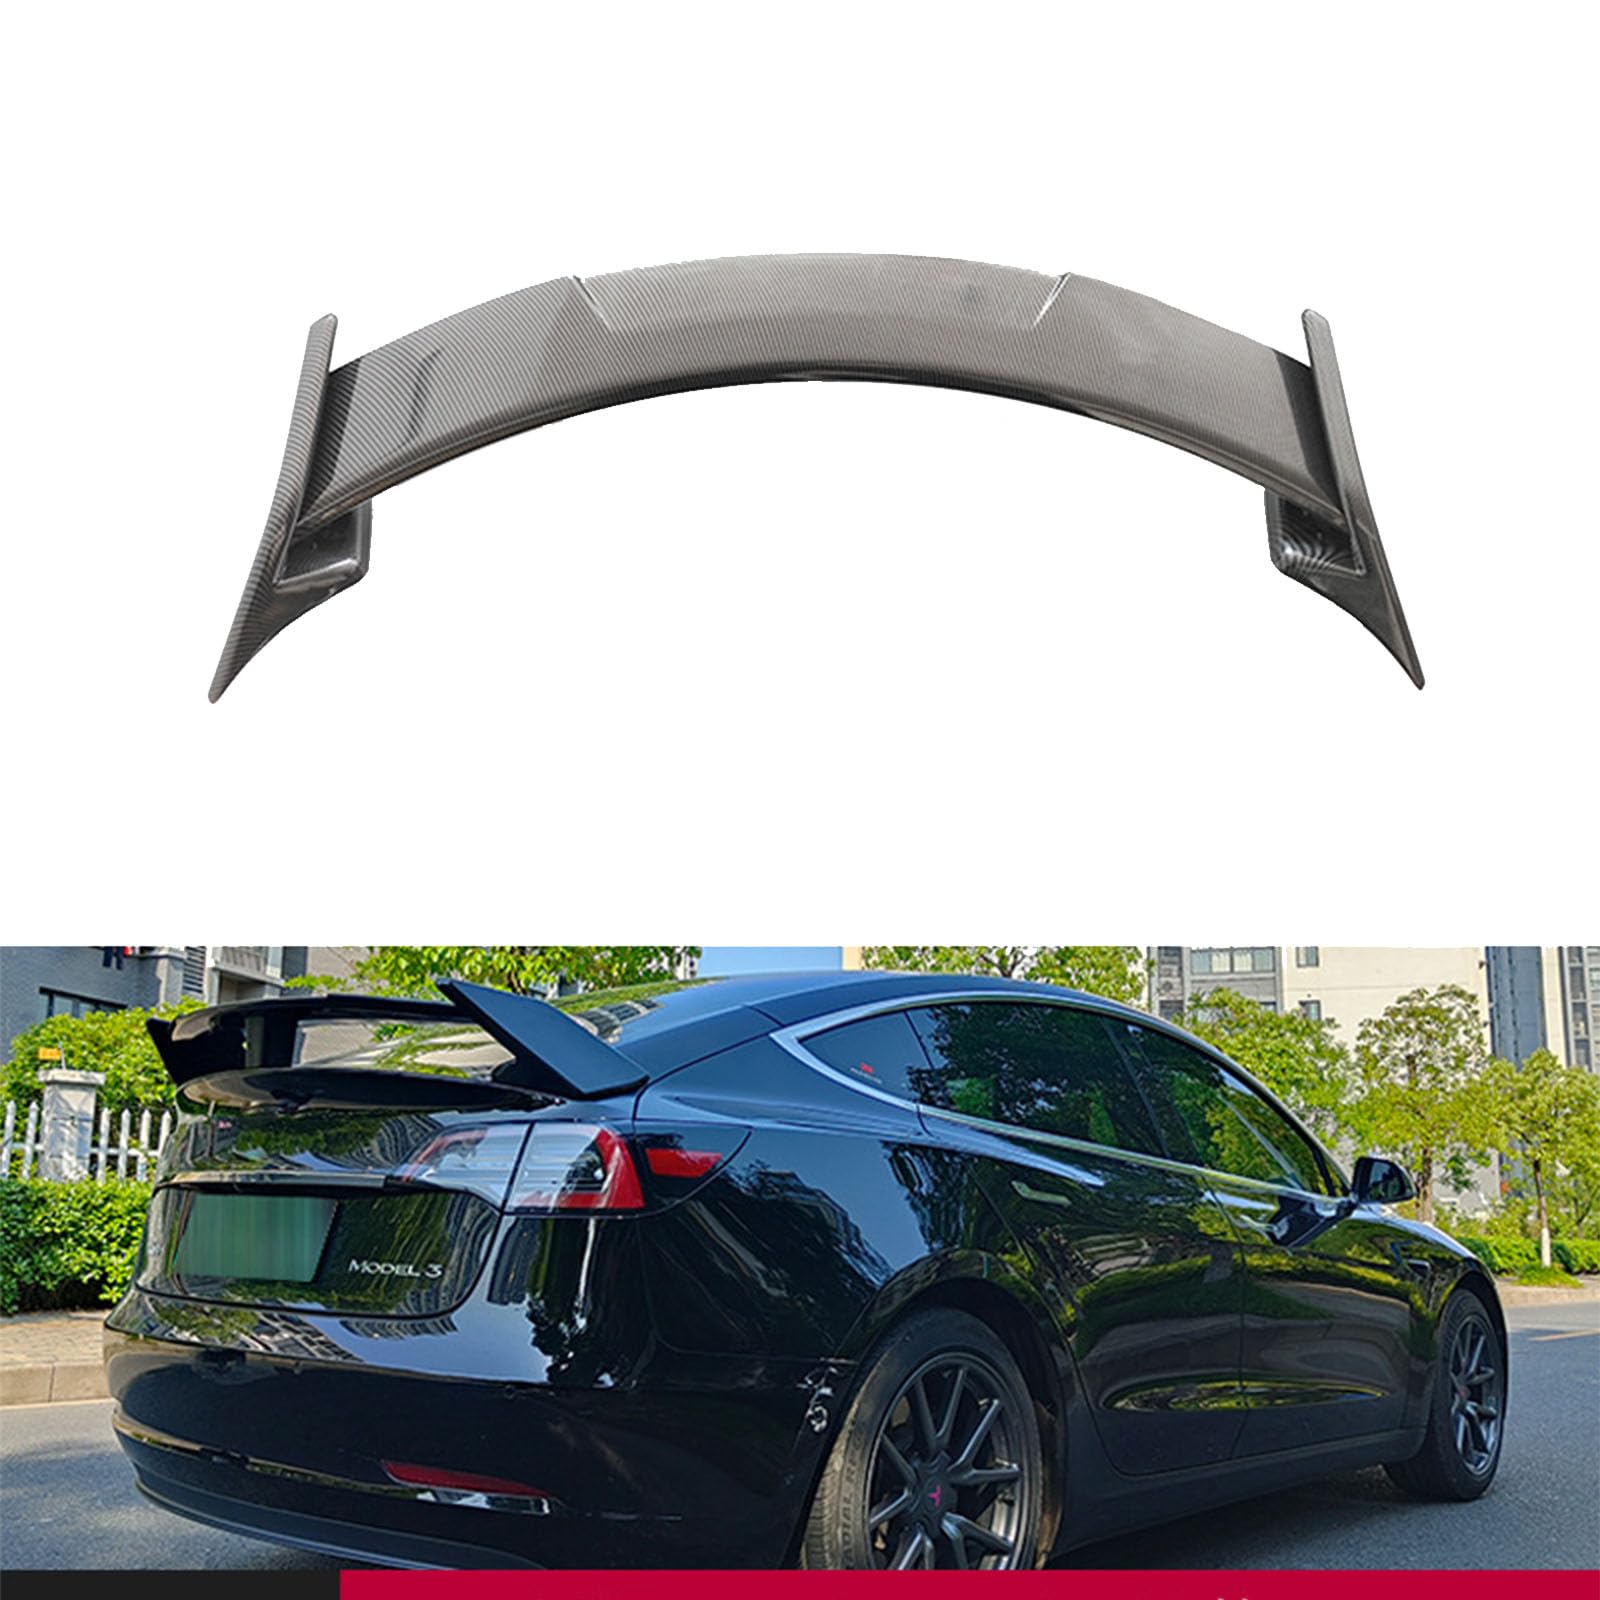 Kompatibel für Tesla Model 3 CMST Style 2019+, Auto-Hebedach-Kofferraum-Spoiler Flügel-Luftabweiser-Tuning-Außen Zubehör,A Carbon Fiber Look von YPFYBHD